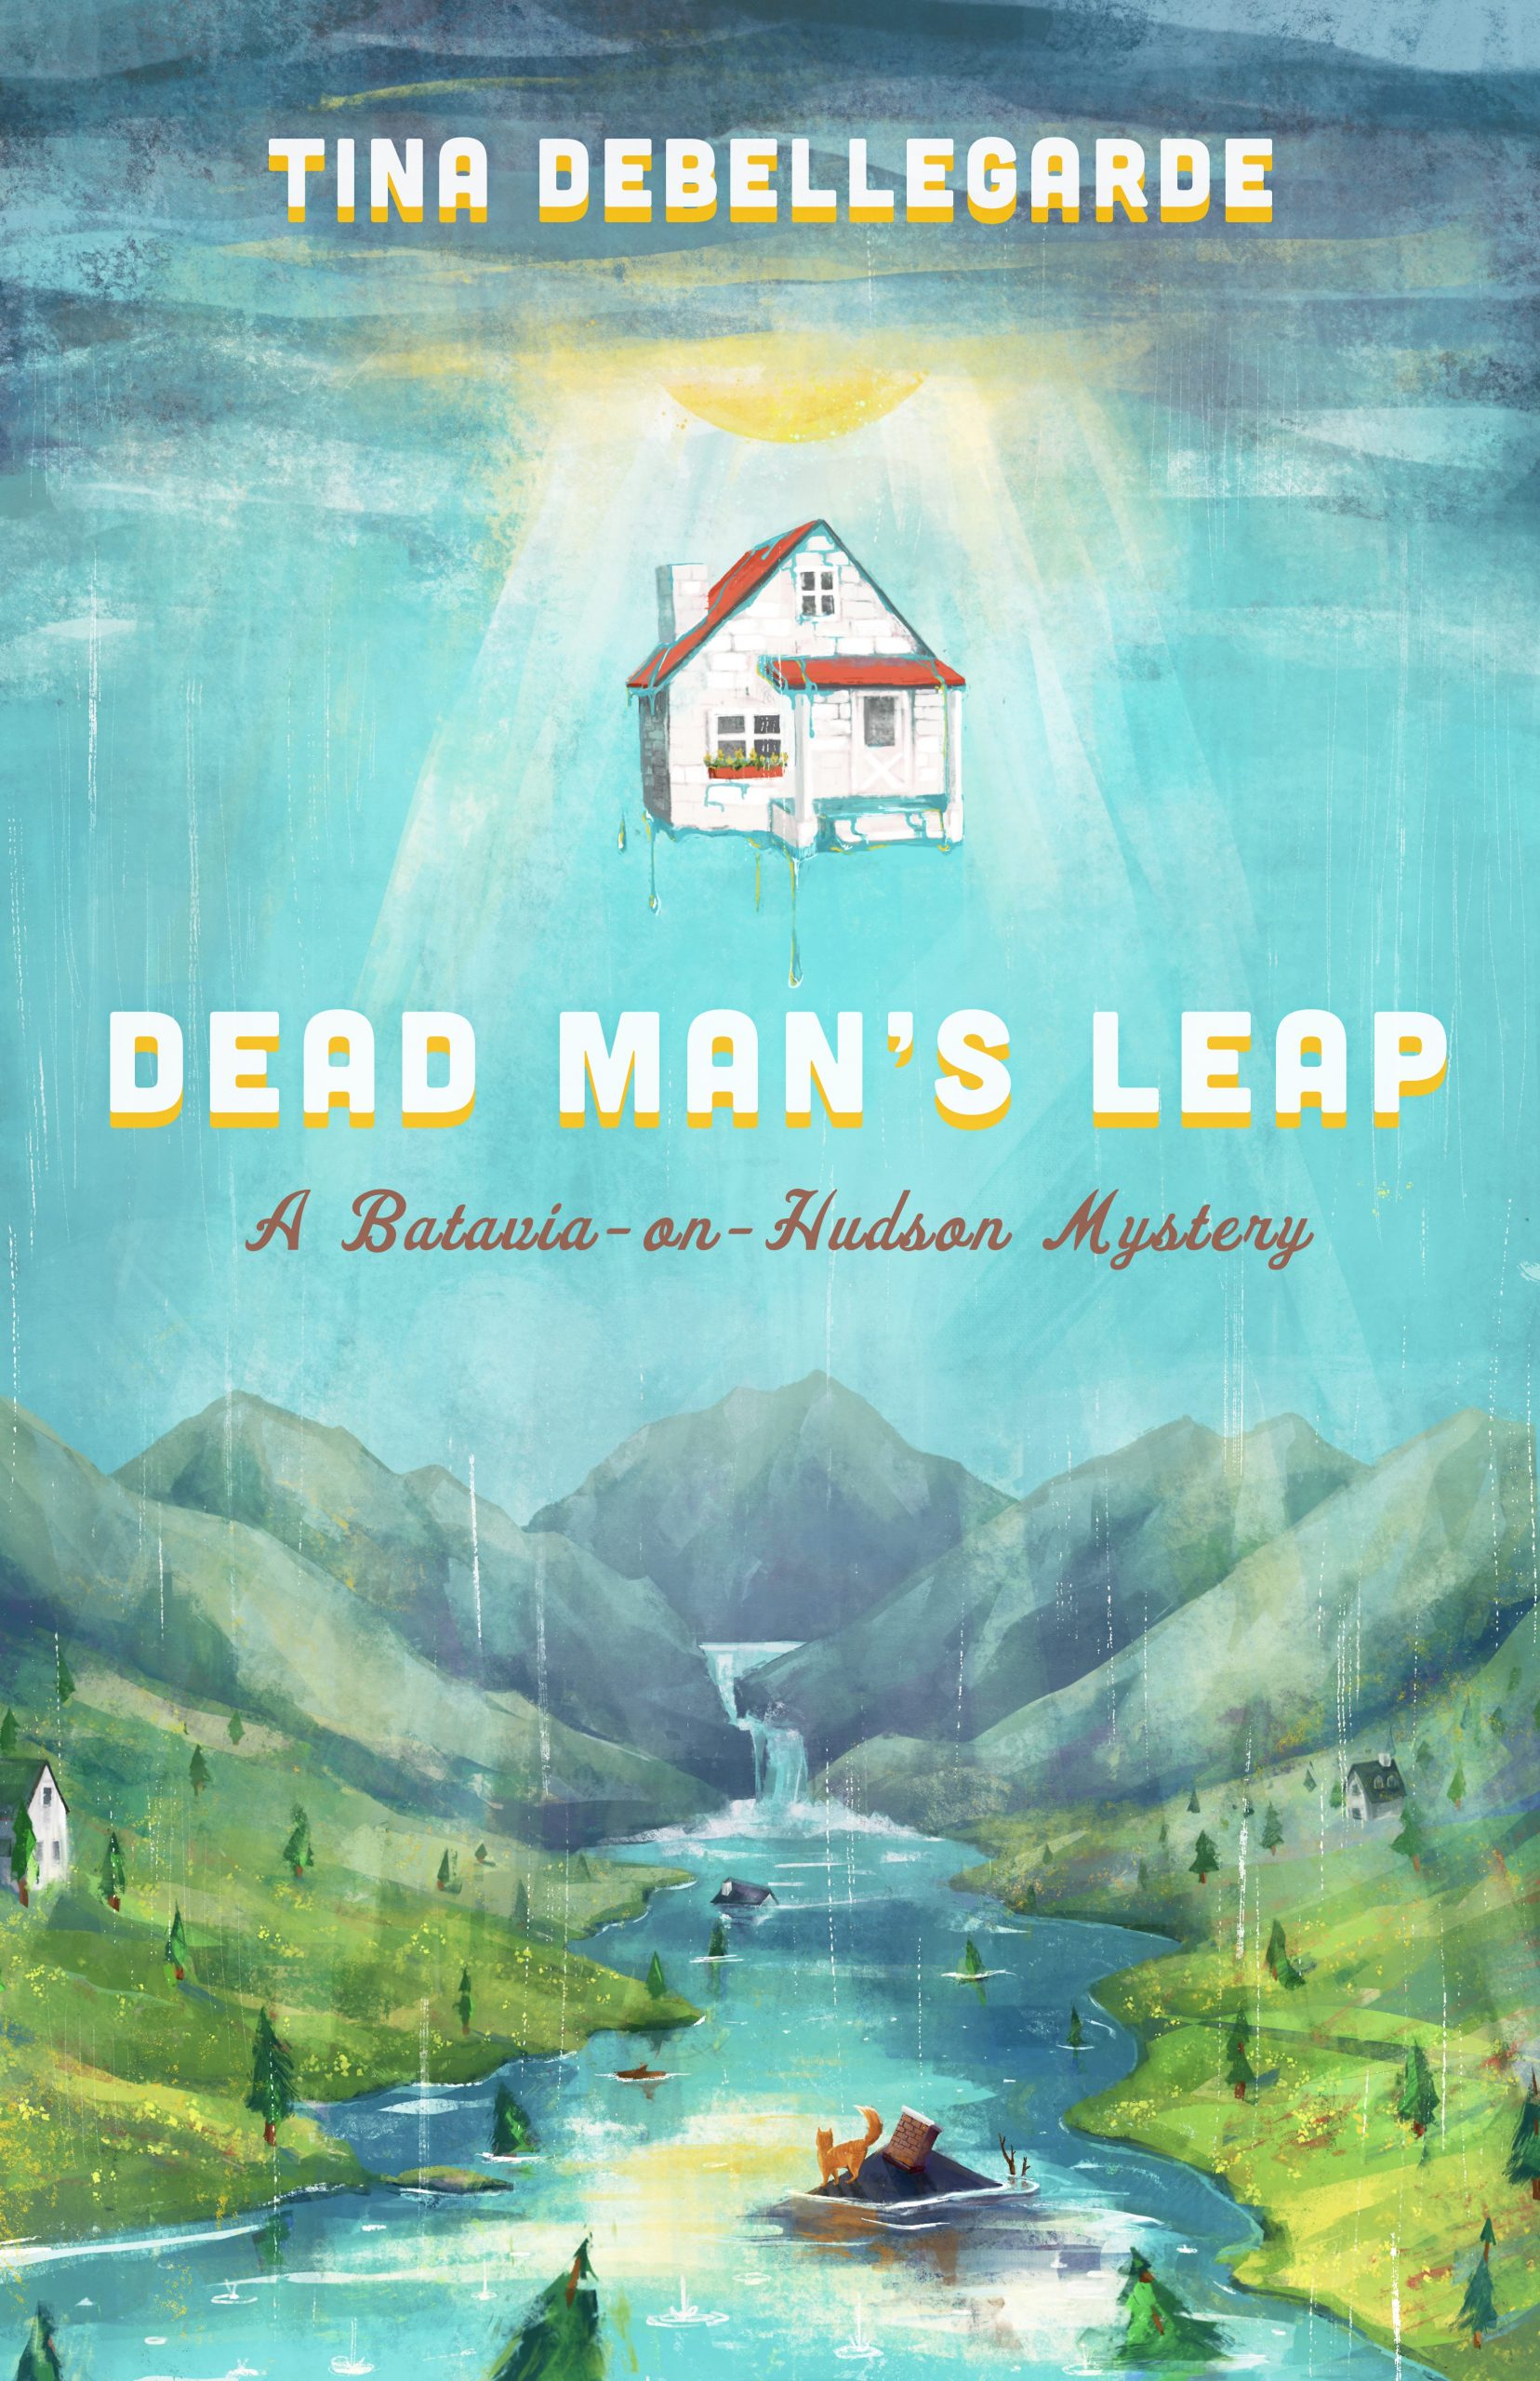 Dead Man's Leap by Tina deBellegarde